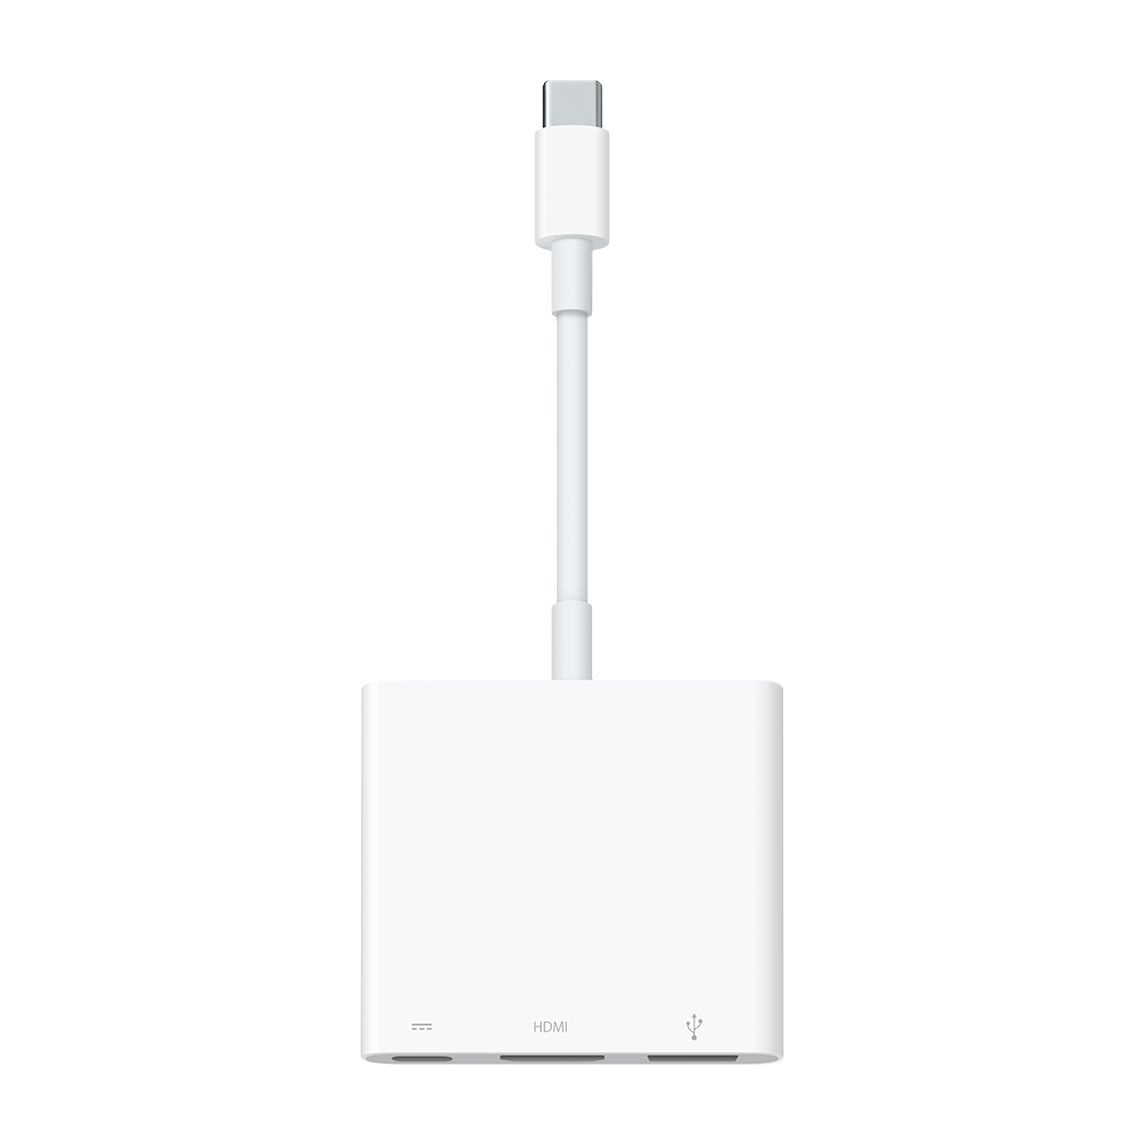 Buy Apple USB-C Digital AV Multiport Adapter at Compu b